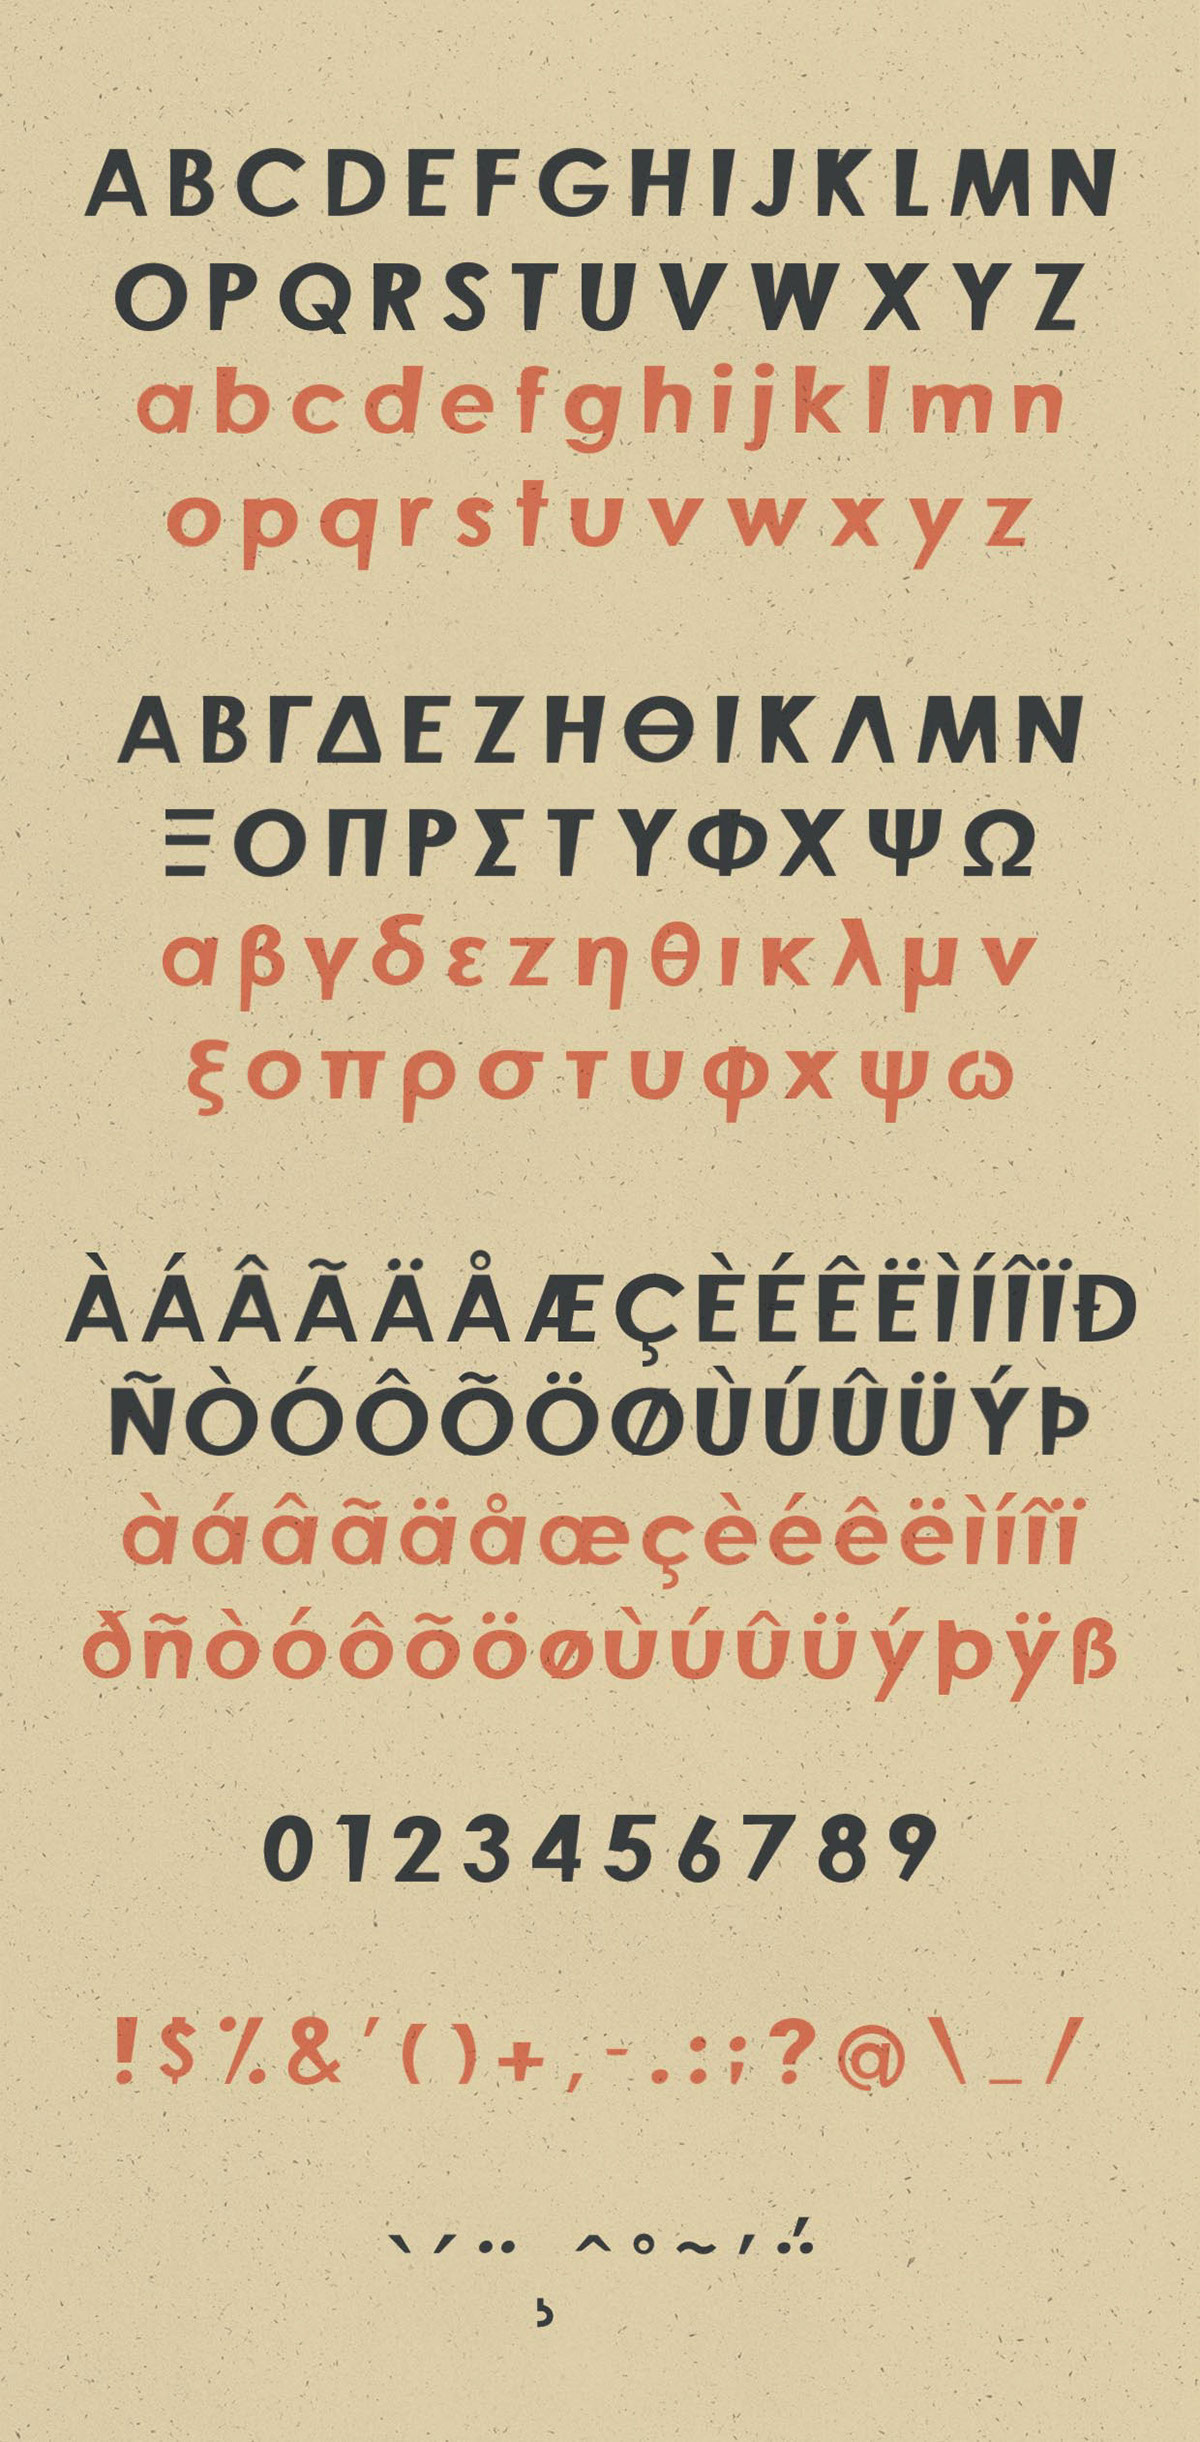 复古设计风格底部变窄英文无衬线字体 Finos Typeface插图(5)